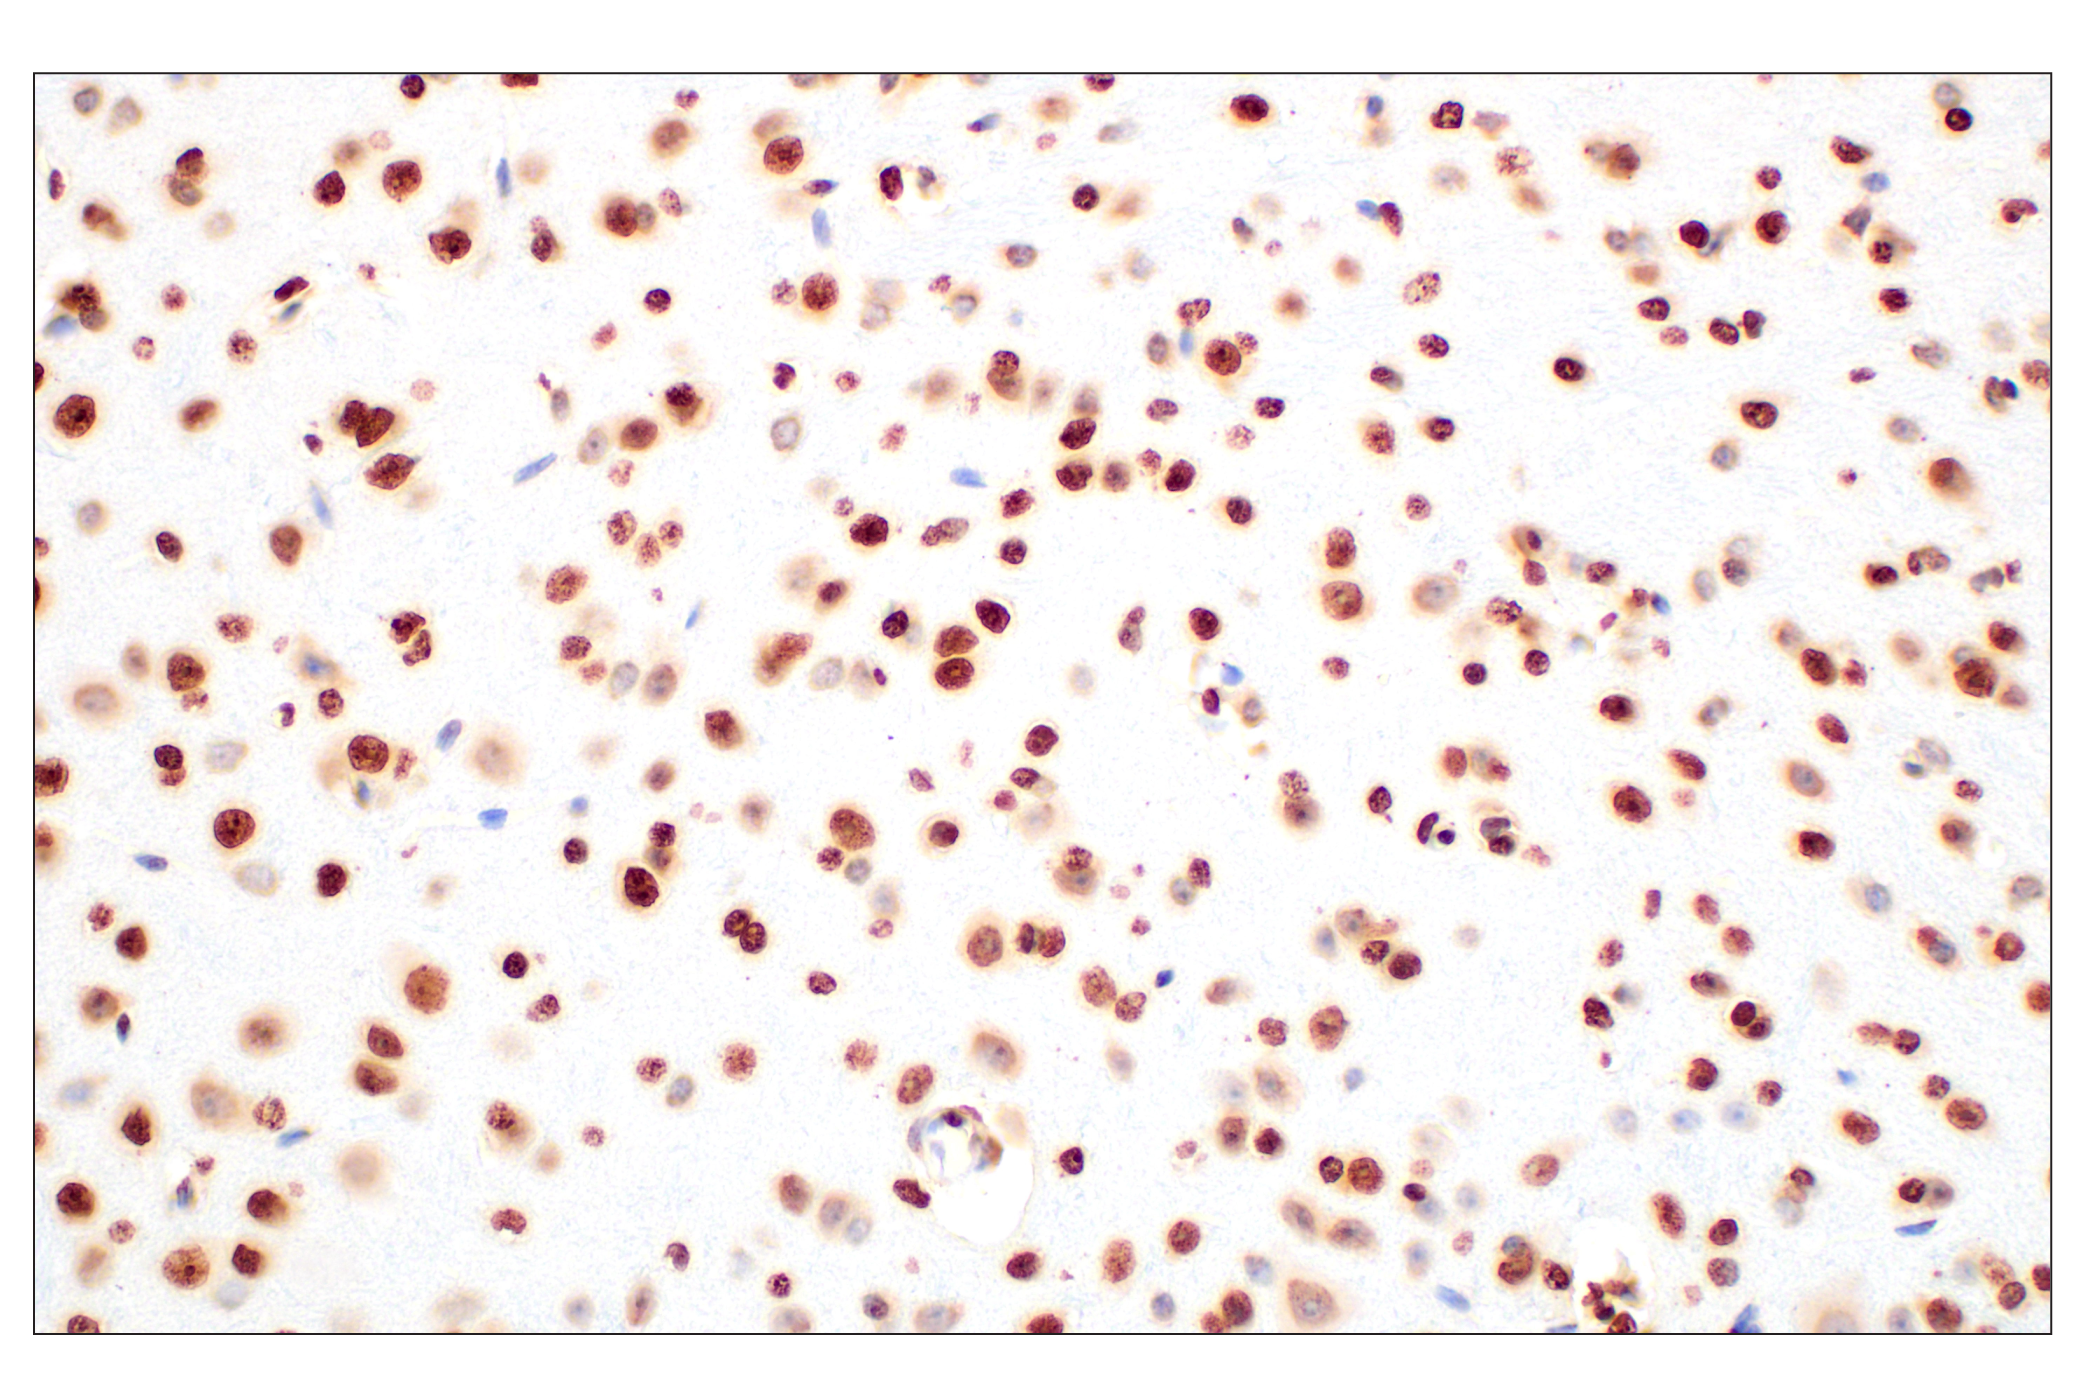  Image 23: Methyl-Histone H3 (Lys9) Antibody Sampler Kit